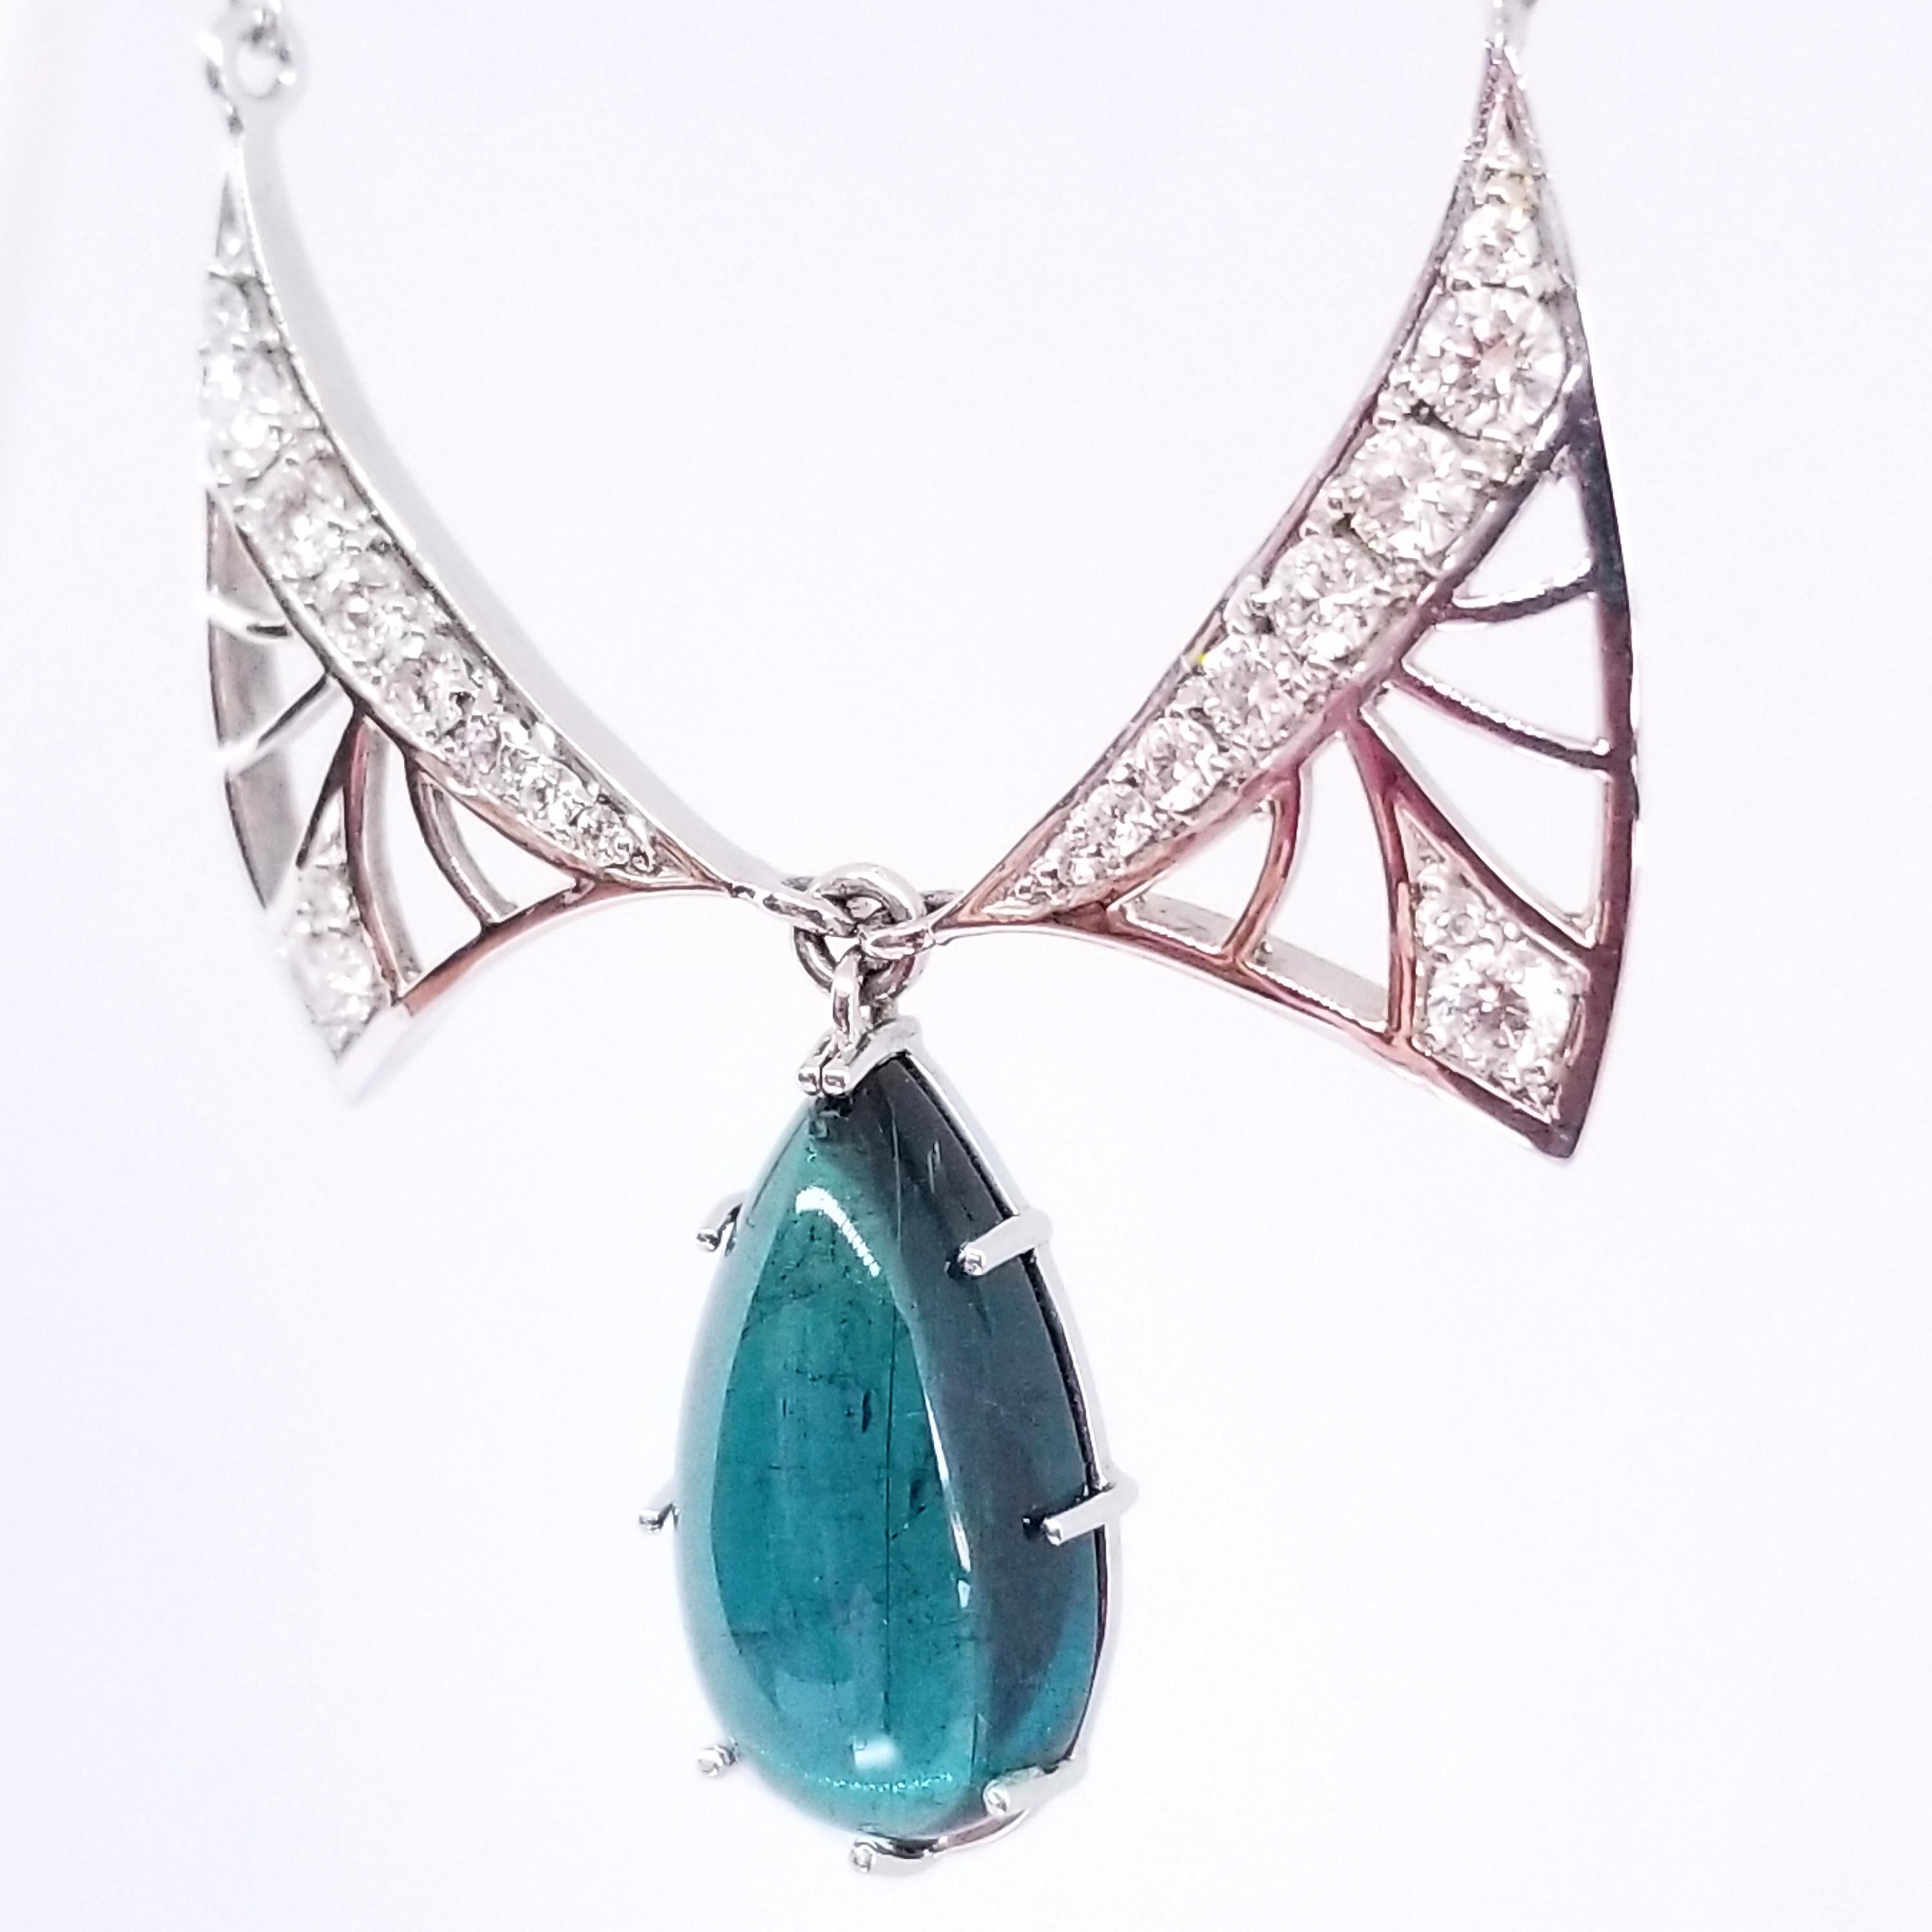 Diese individuell gestaltete und gefertigte, einzigartige Tropfen-Halskette des Kunsthandwerkers Tom Castor ist in Jugendstil-Tradition, zart und offen, mit Diamantflügeln. Eingerahmt von den Flügeln ist ein natürlicher Indicolite Blue Turmalin mit